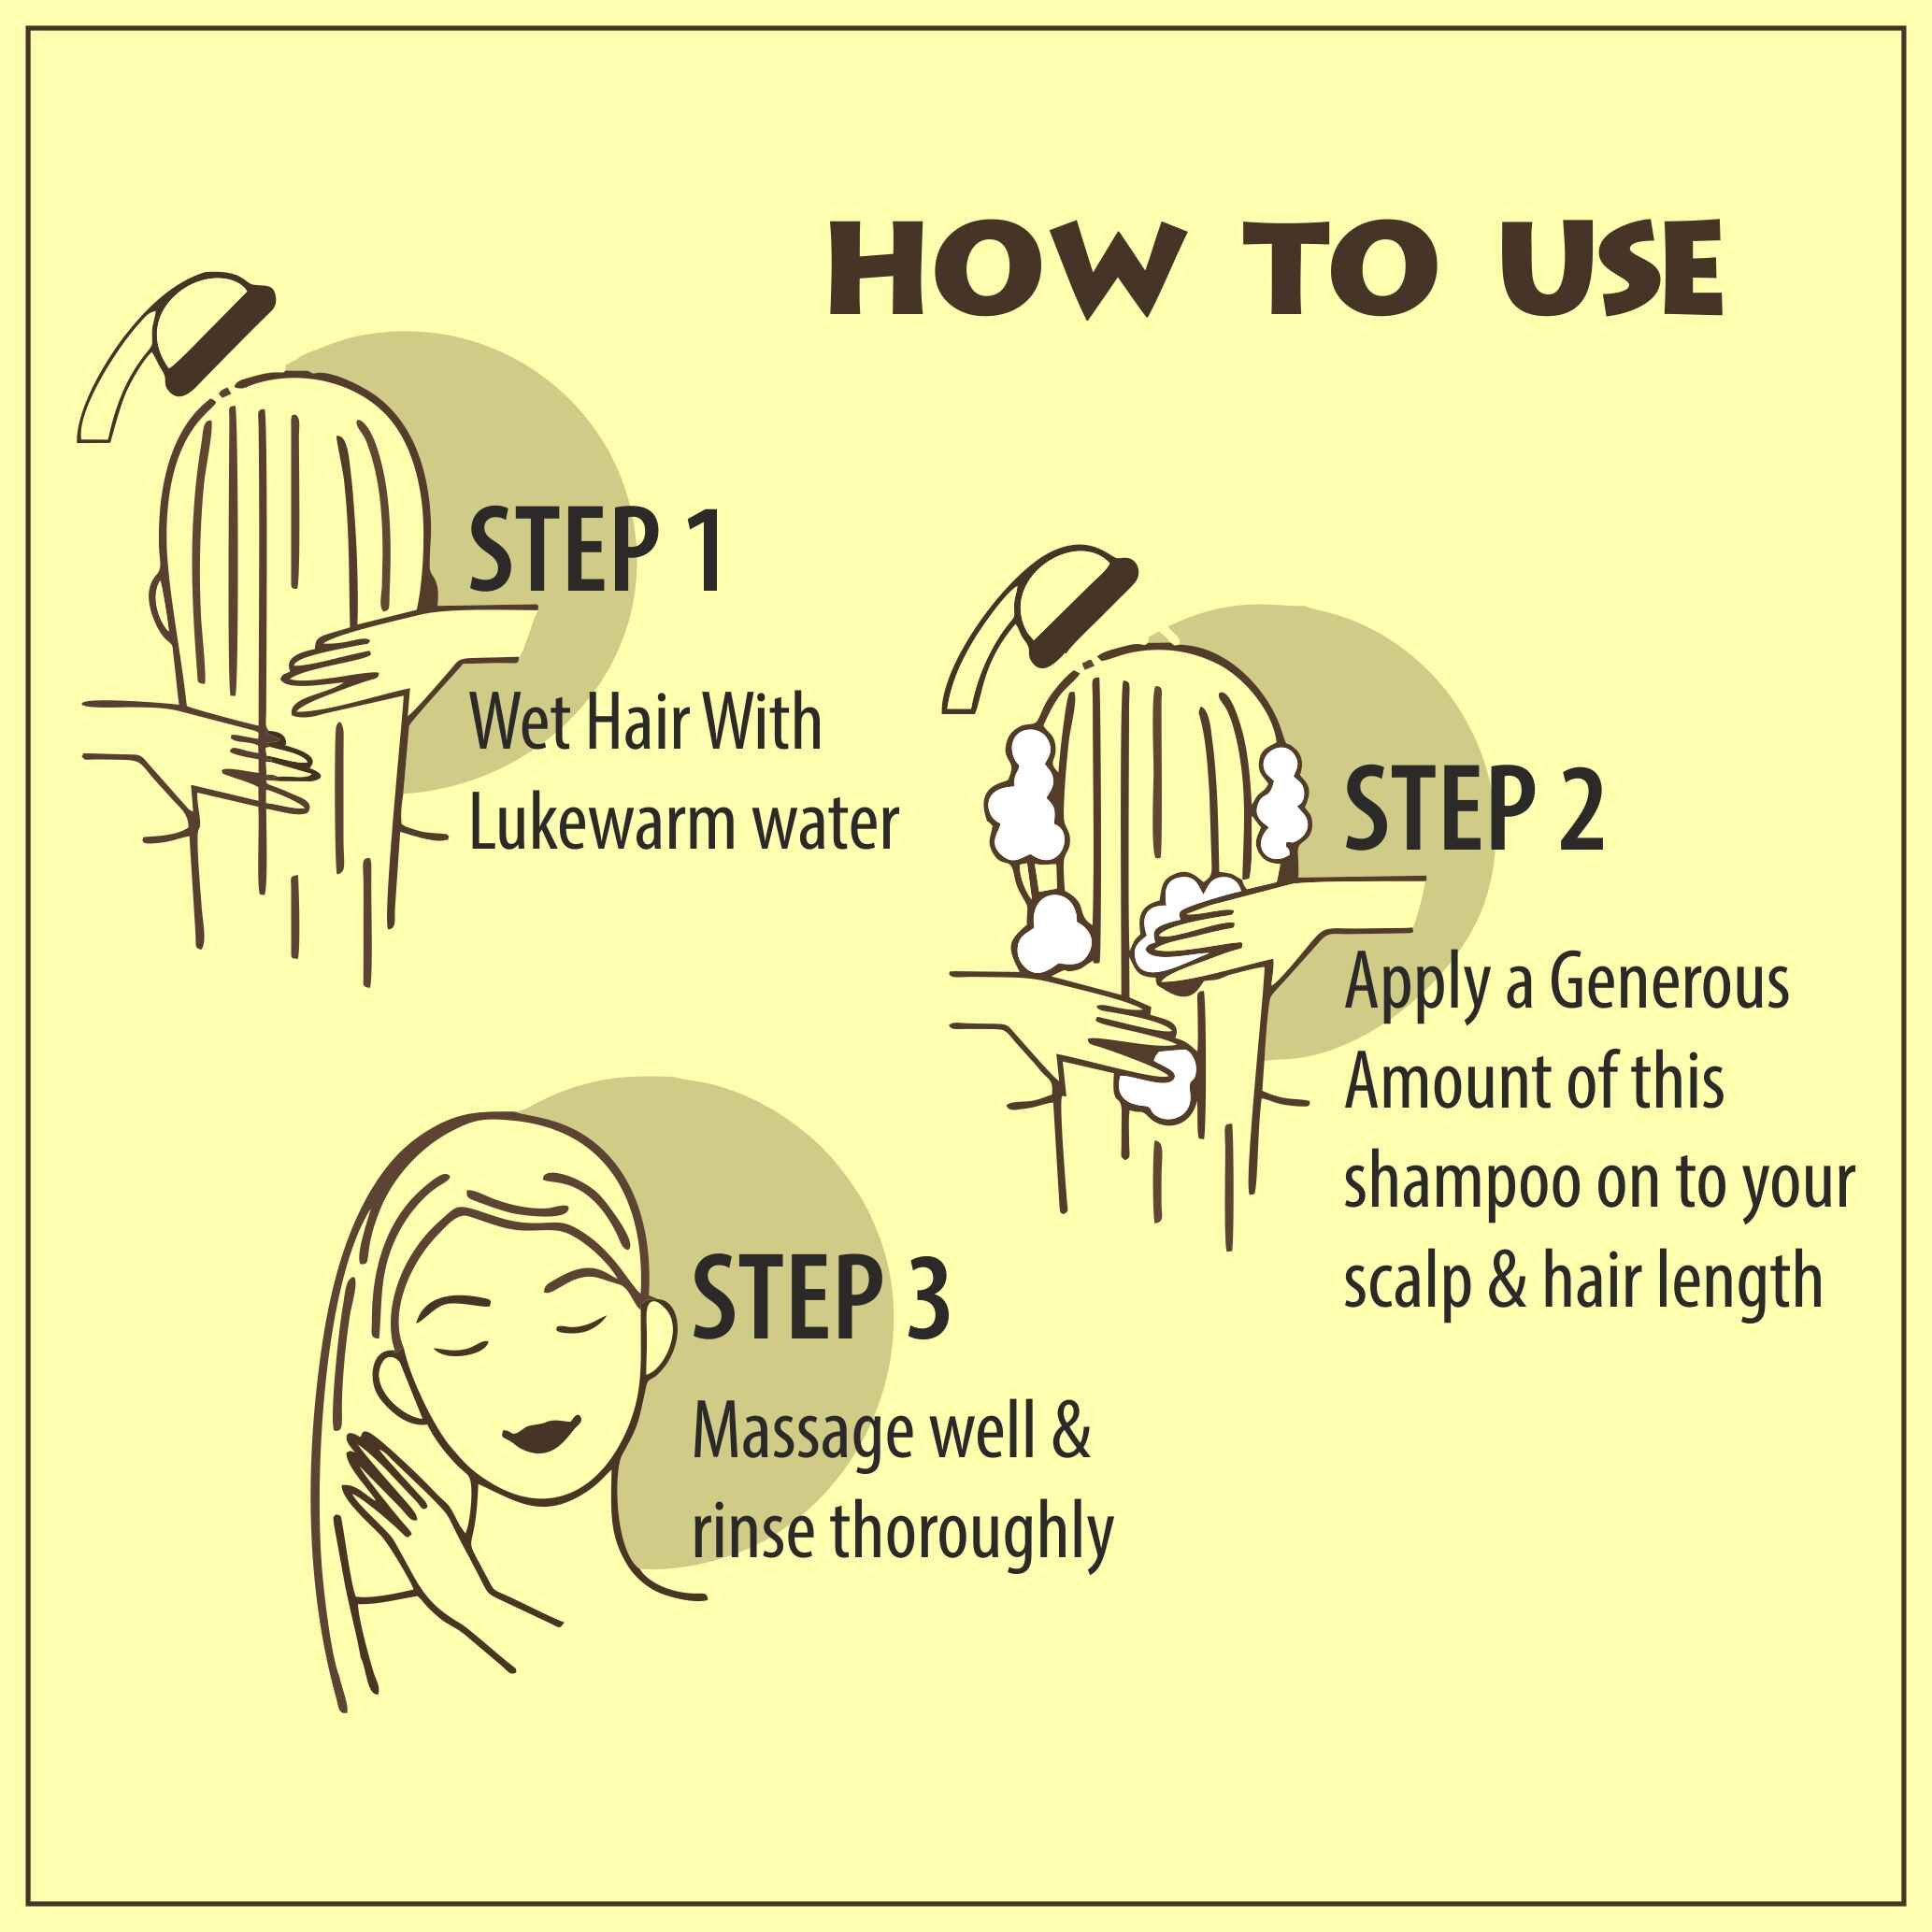 how to use keratin shampoo